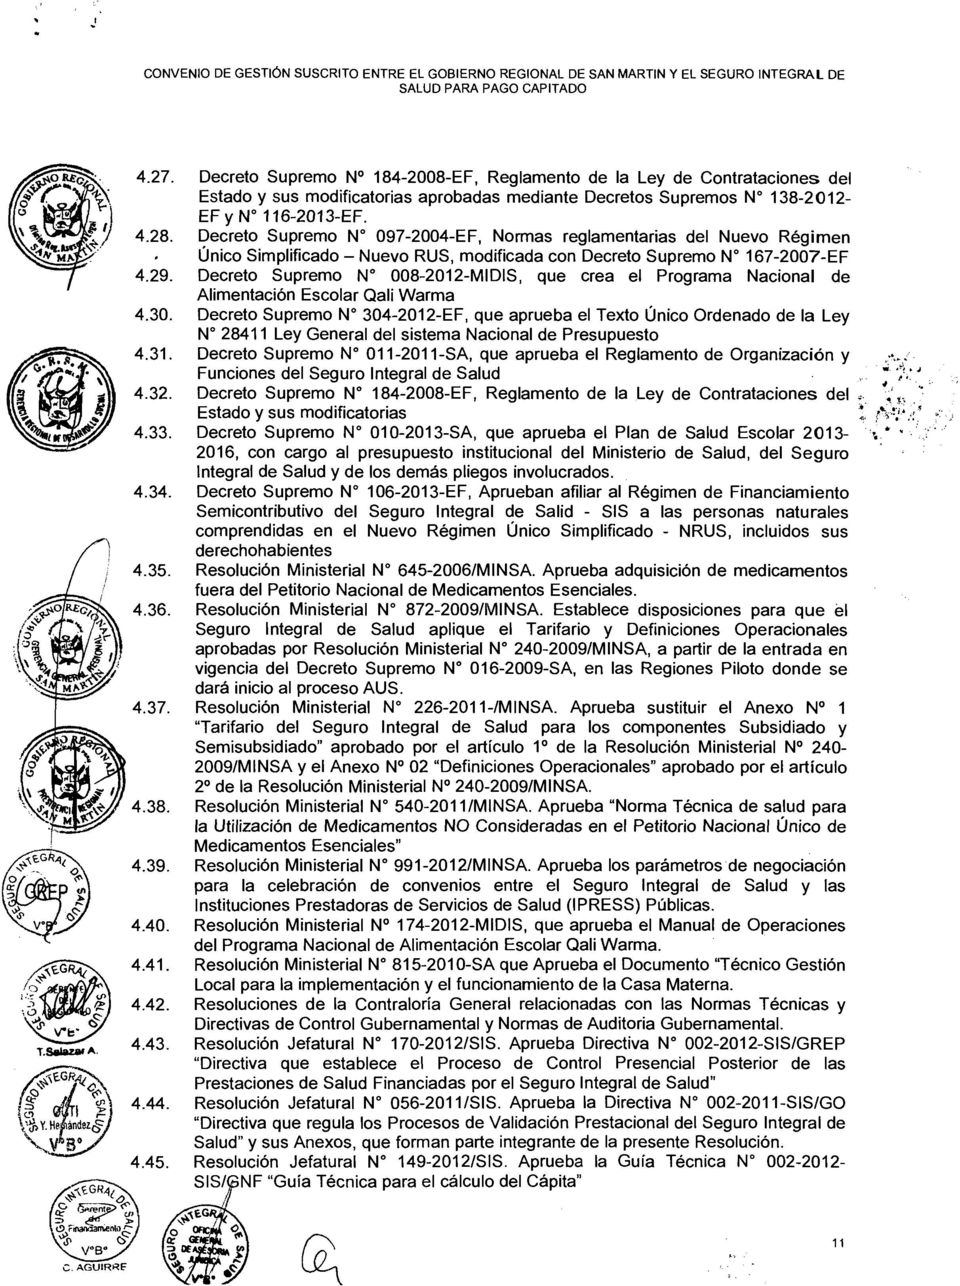 Decreto Supremo N 097-2004-EF, Normas reglamentarias del Nuevo Régimen Único Simplificado - Nuevo RUS, modificada con Decreto Supremo W 167-2007-EF Decreto Supremo W 008-2012-MIDIS, que crea el